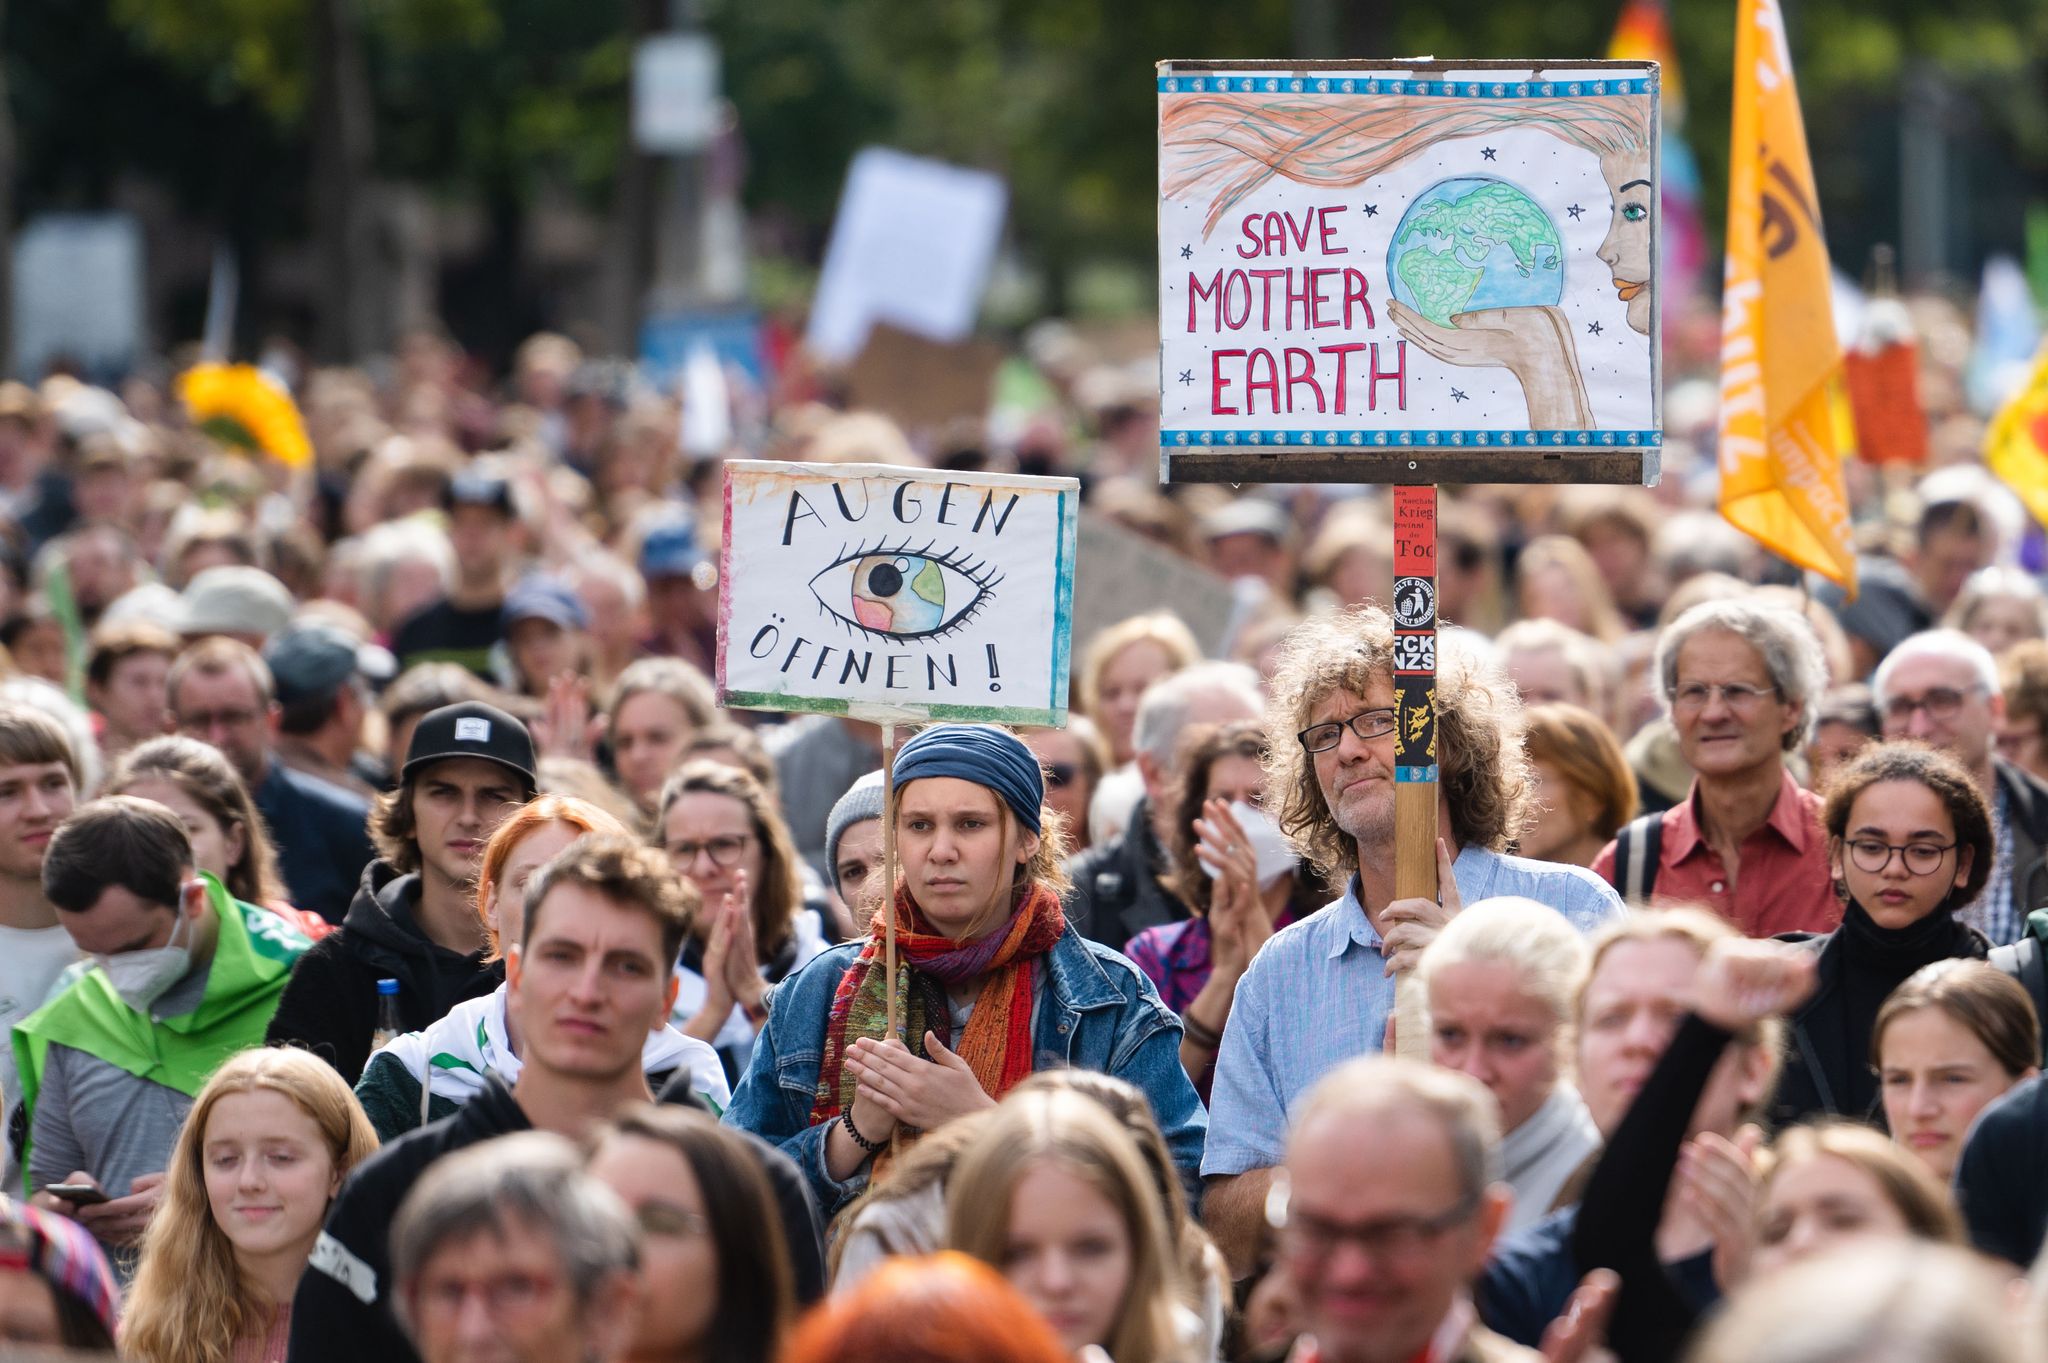 Die Klimaschutzbewegung Fridays For Future hat für diesen Freitag zu einem weltweiten Klimastreik aufgerufen - hier die Demo in Köln. (© Marius Becker/dpa)